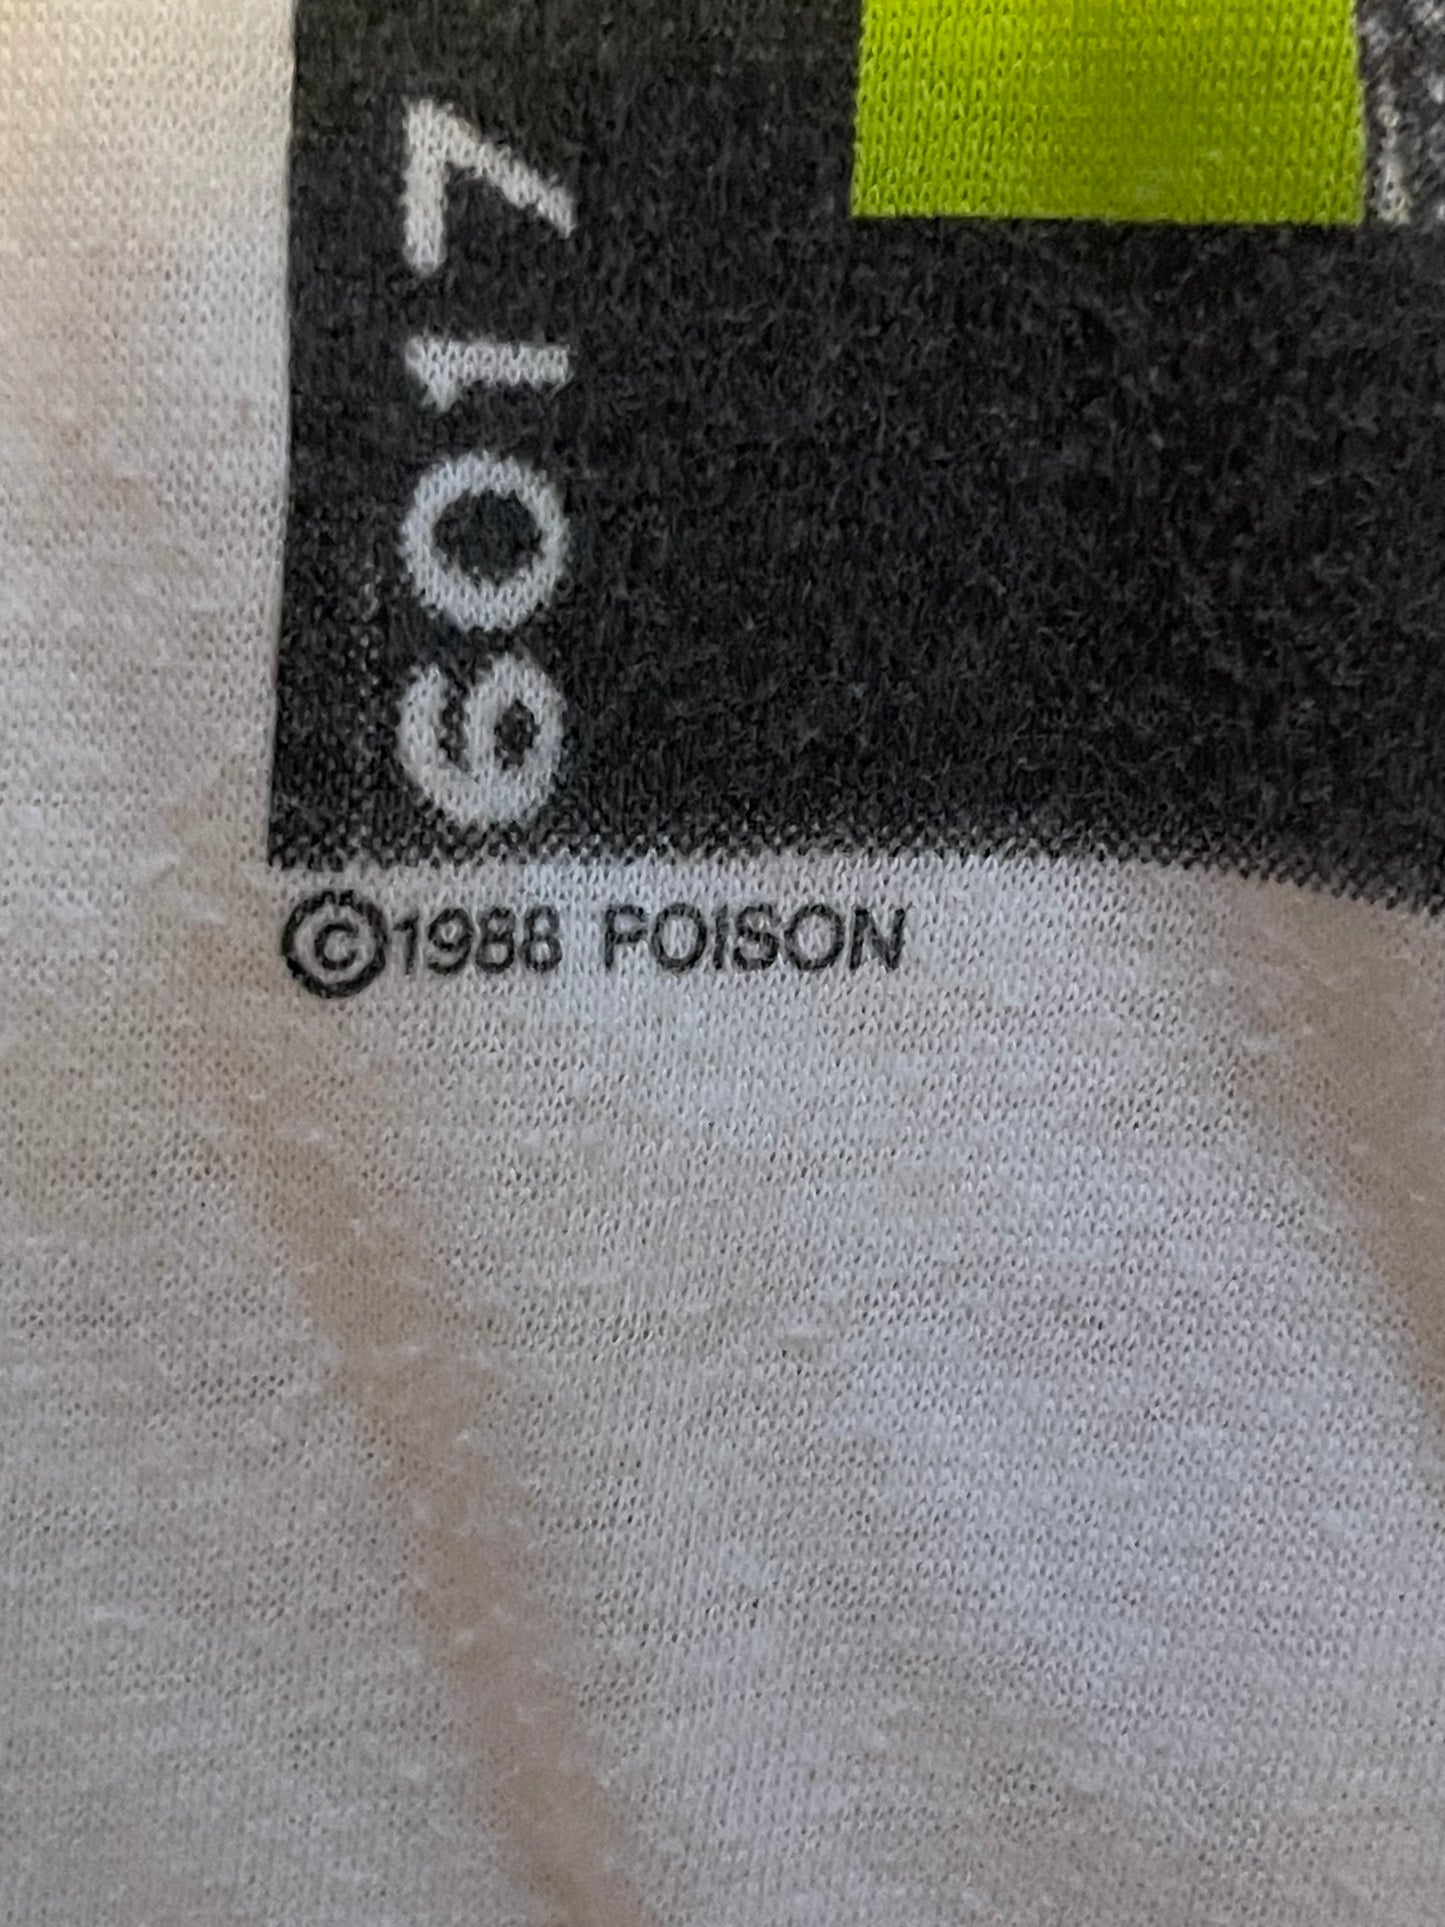 1989 Poison Tee